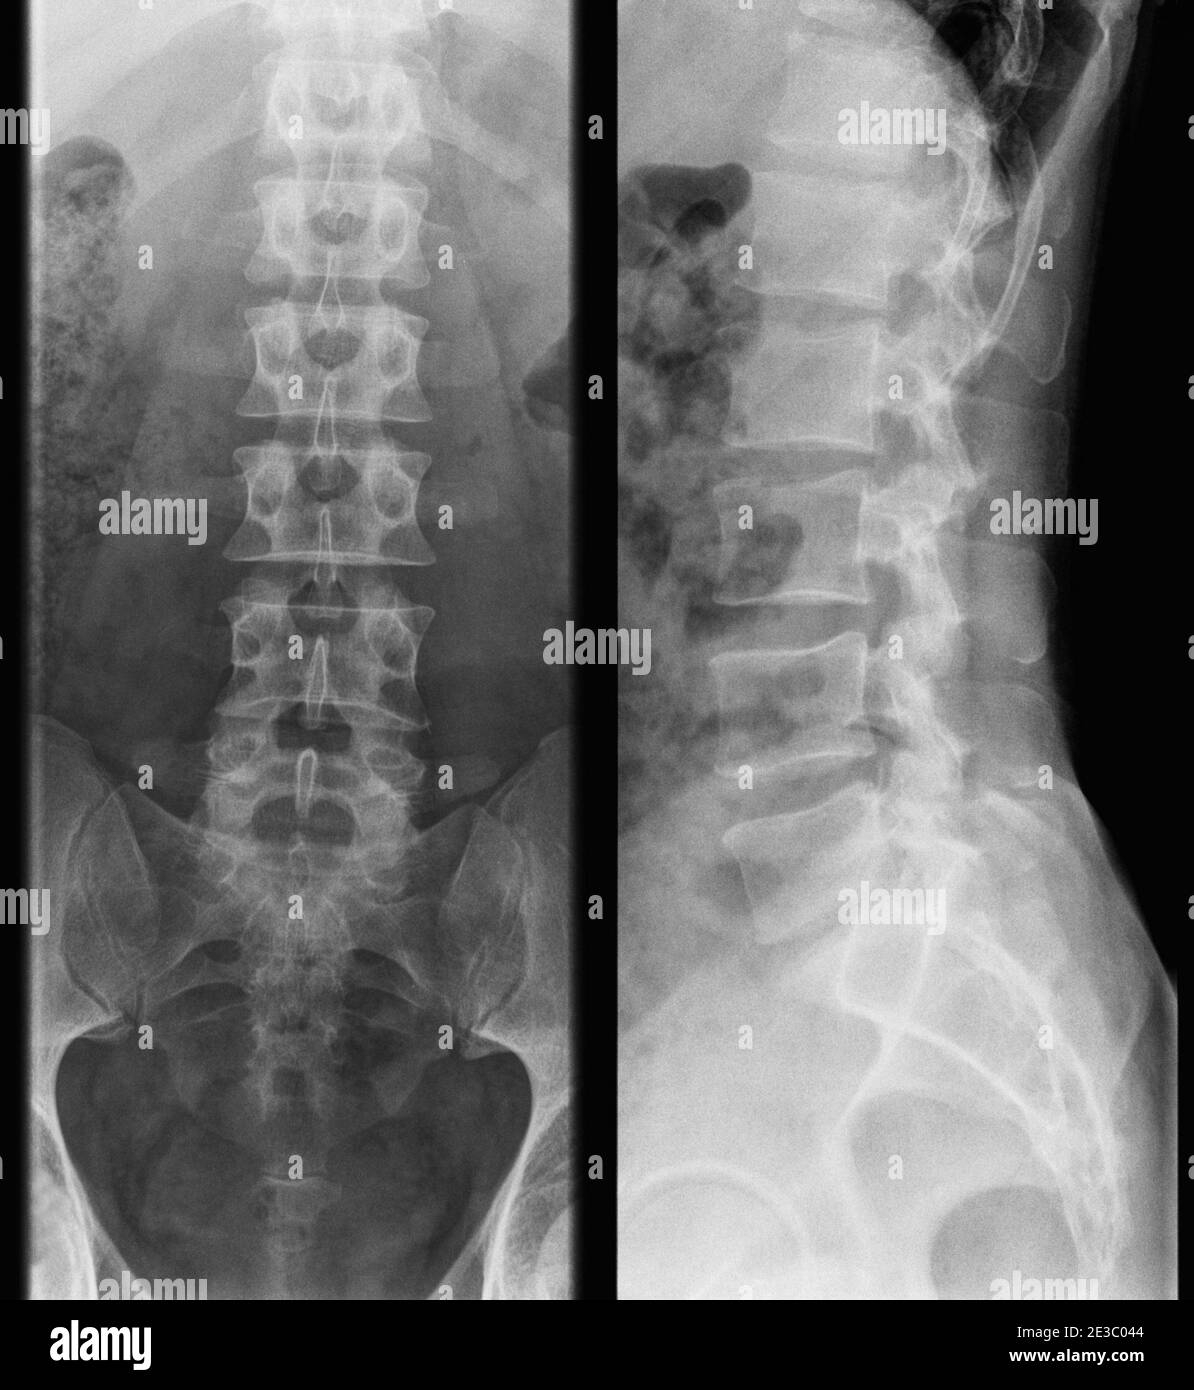 photo à rayons x de la colonne lombaire humaine - homme adulte, vue avant et latérale Banque D'Images